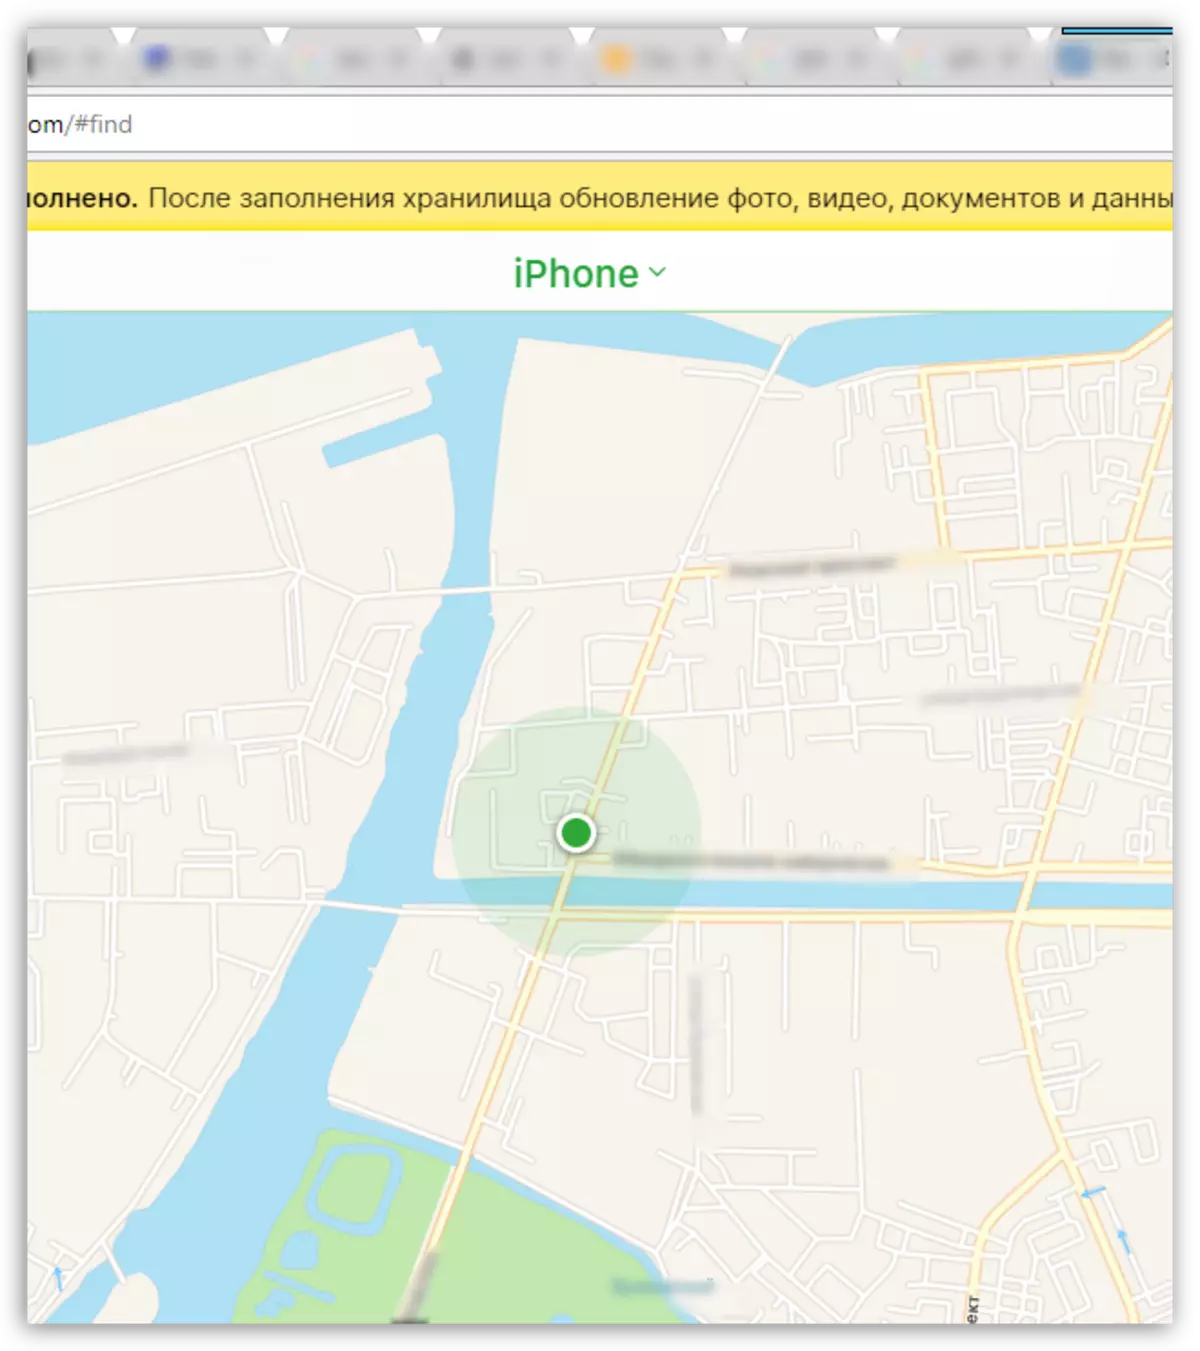 Pagpangita iPhone sa mapa pinaagi sa icloud.com